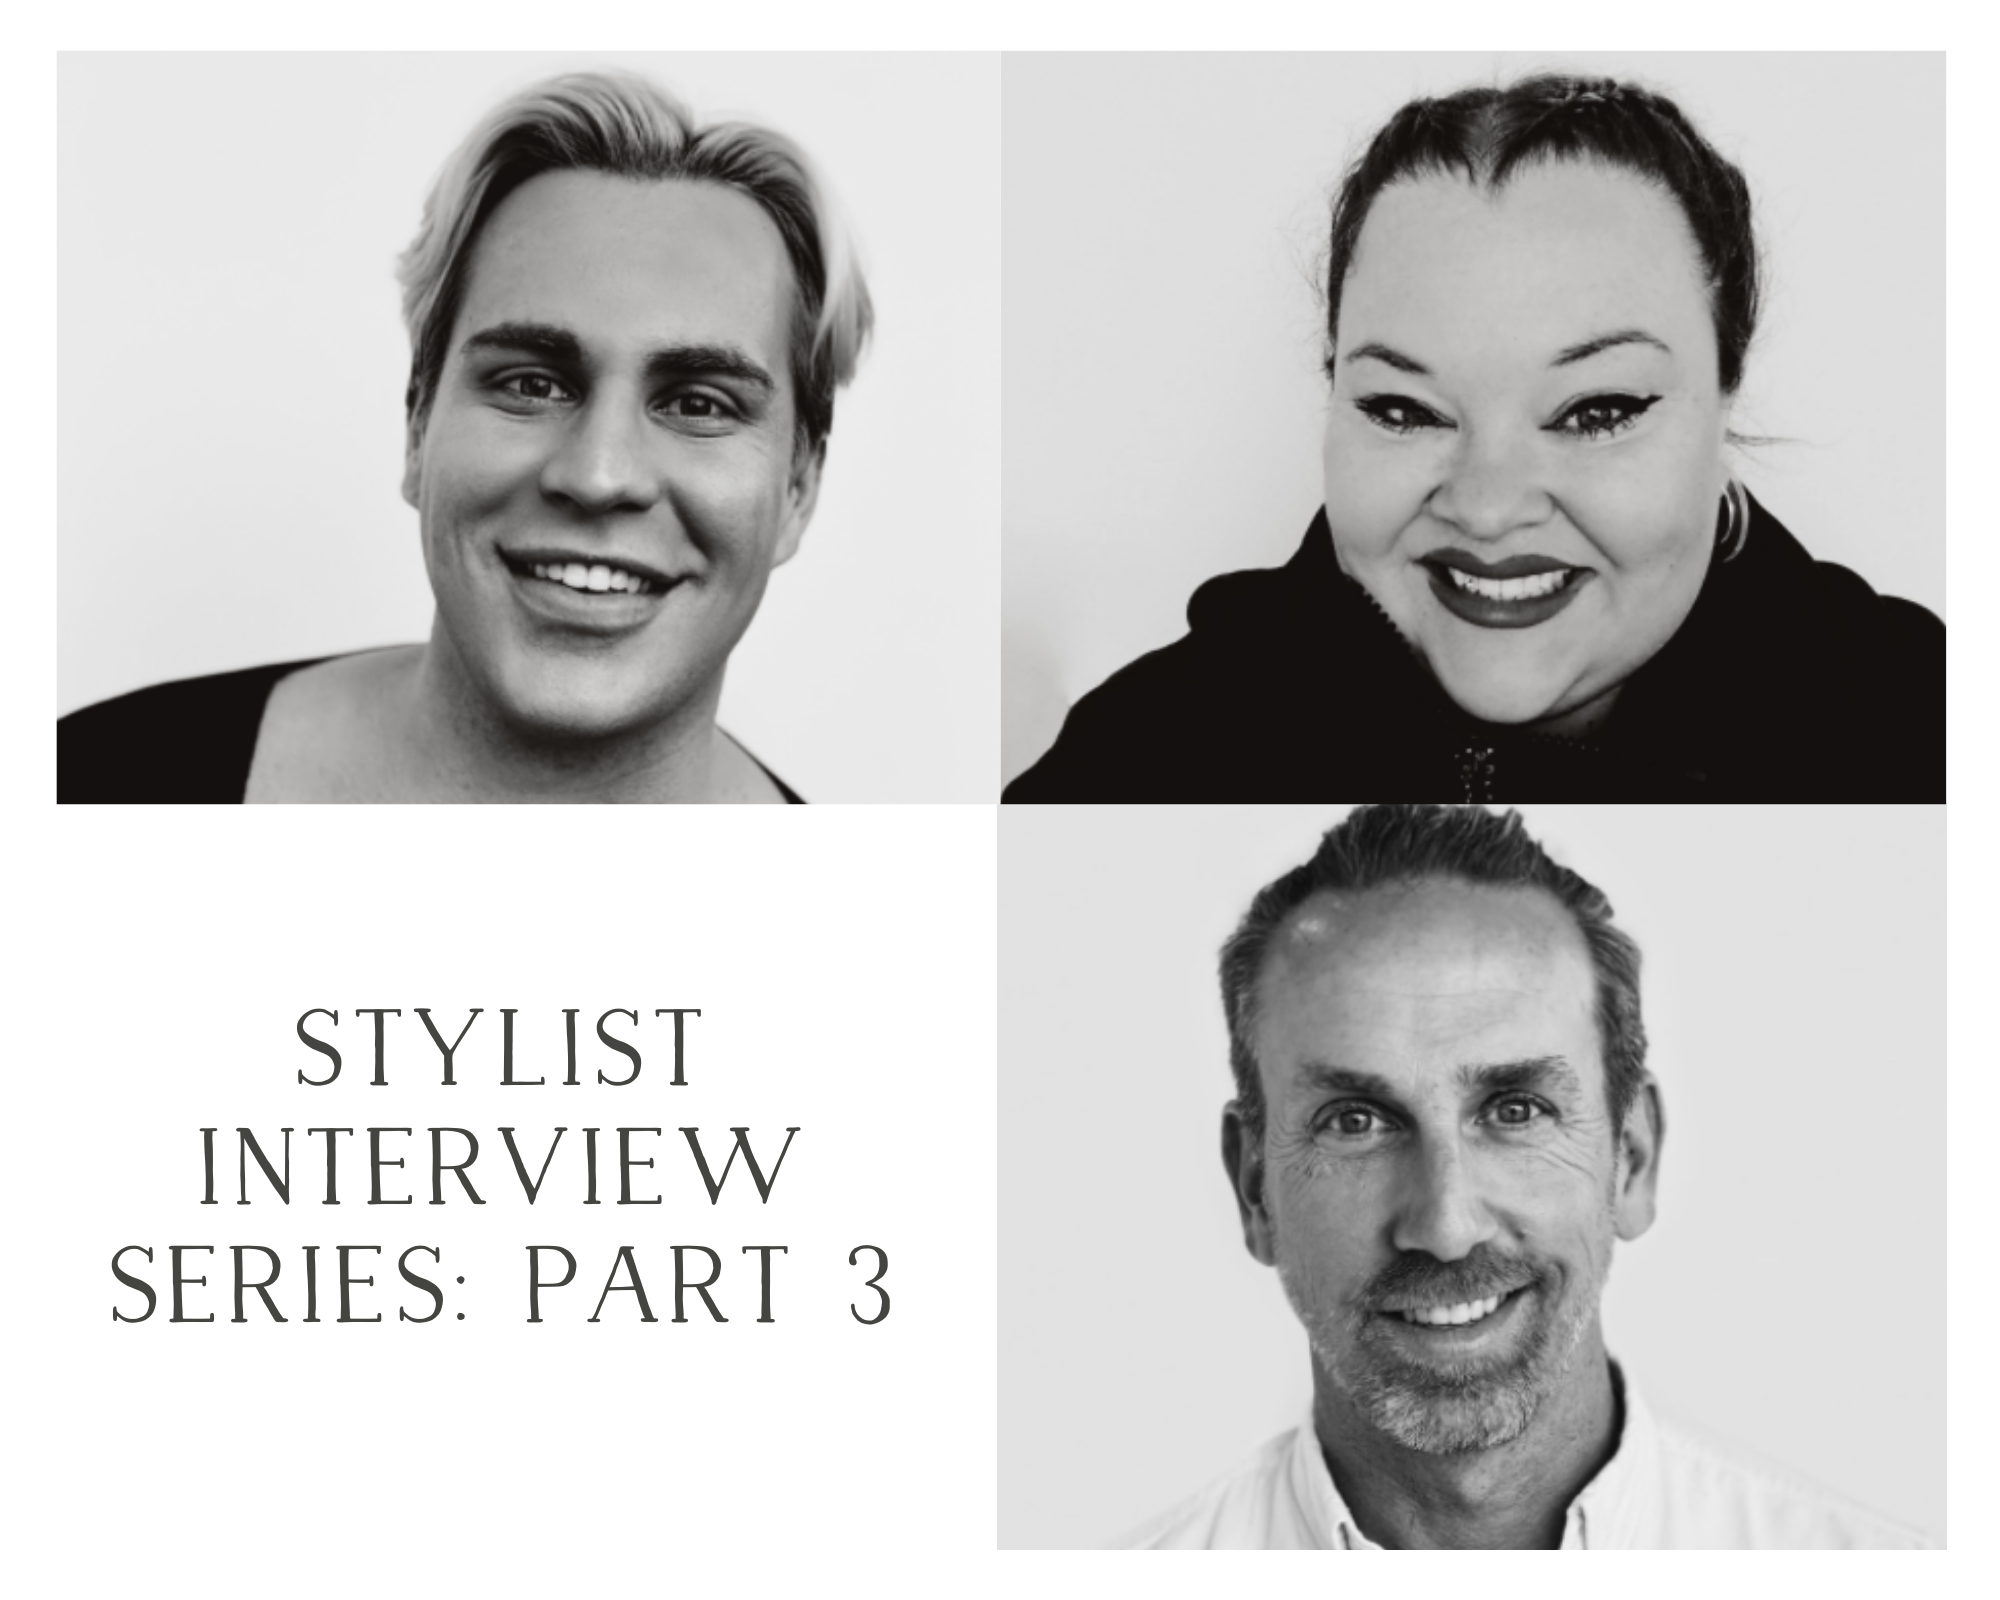 Stylist Interview Series: Part 3 – Meet Jared, Brett, and Courtney